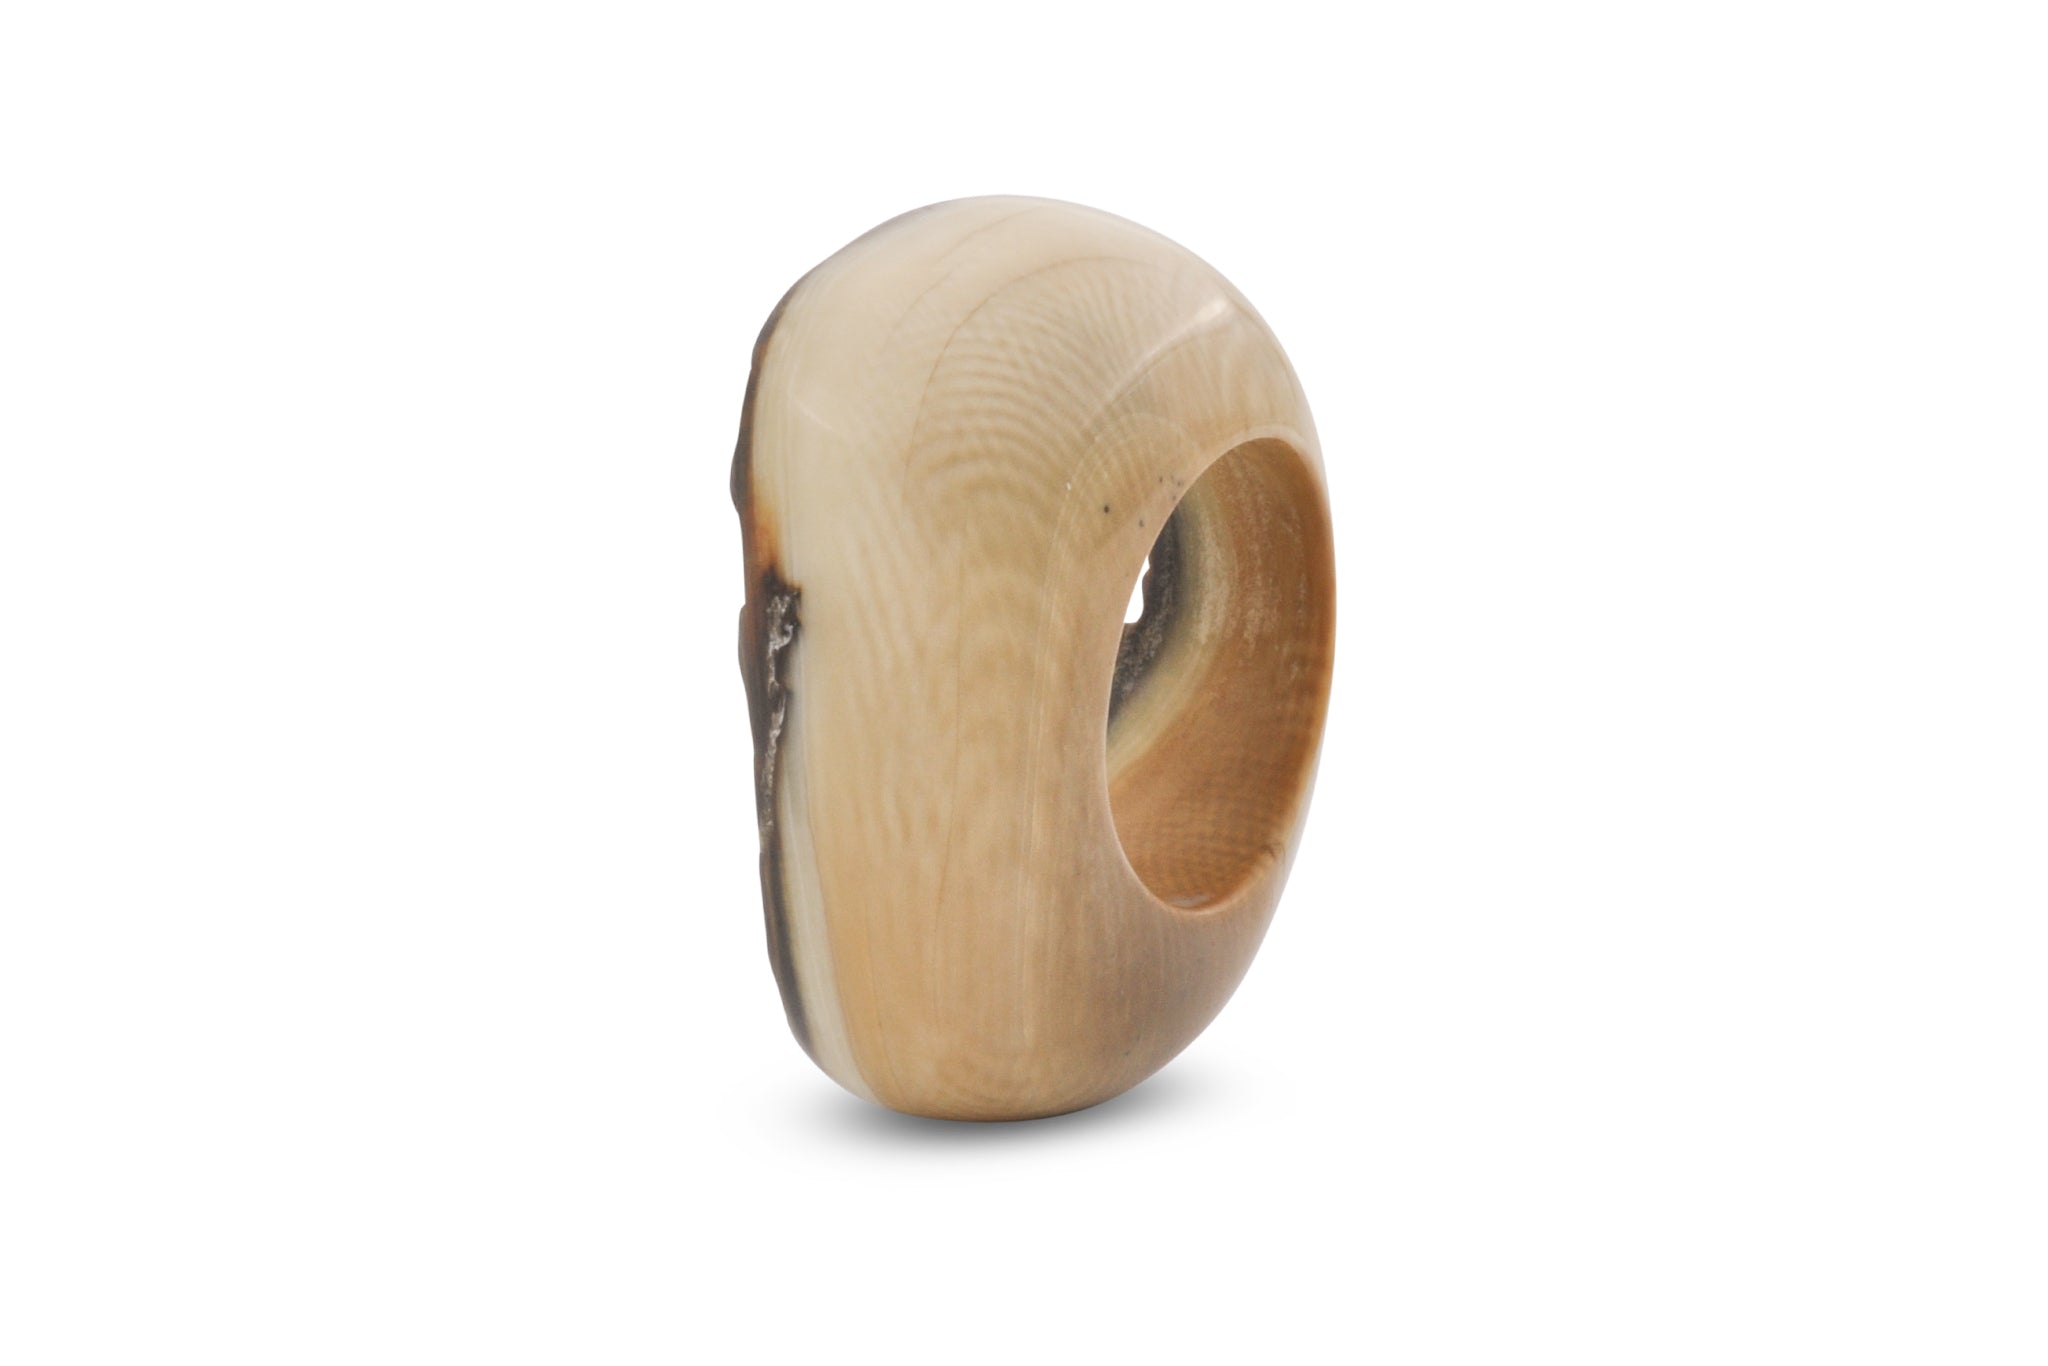 Ring aus Mammut Elfenbein, seitlich aufgenommen, wunderschöne Schrägersche Linien, das typische Zick-Zack Muster